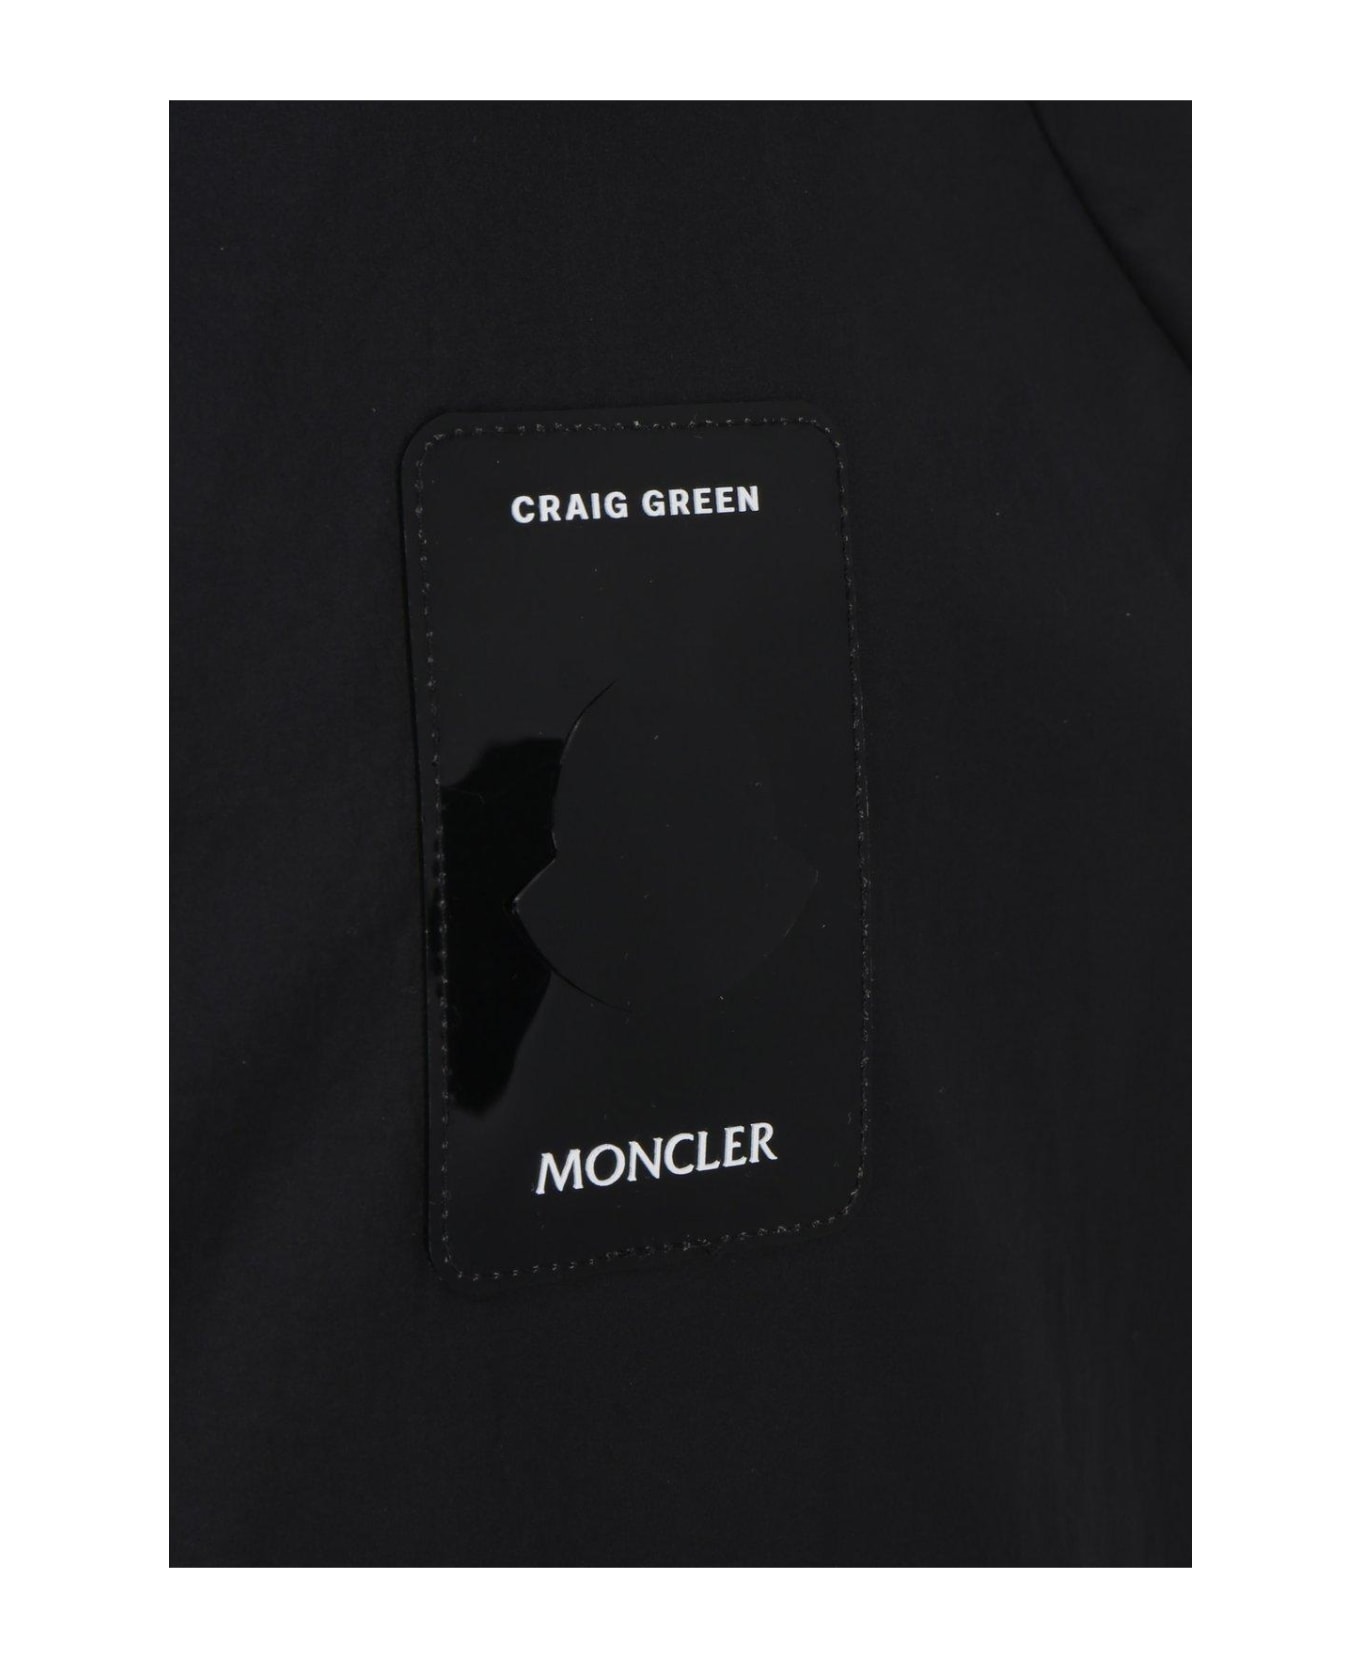 Moncler Genius Moncler X Craig Green Drawstring Zip-up Jacket ジャケット